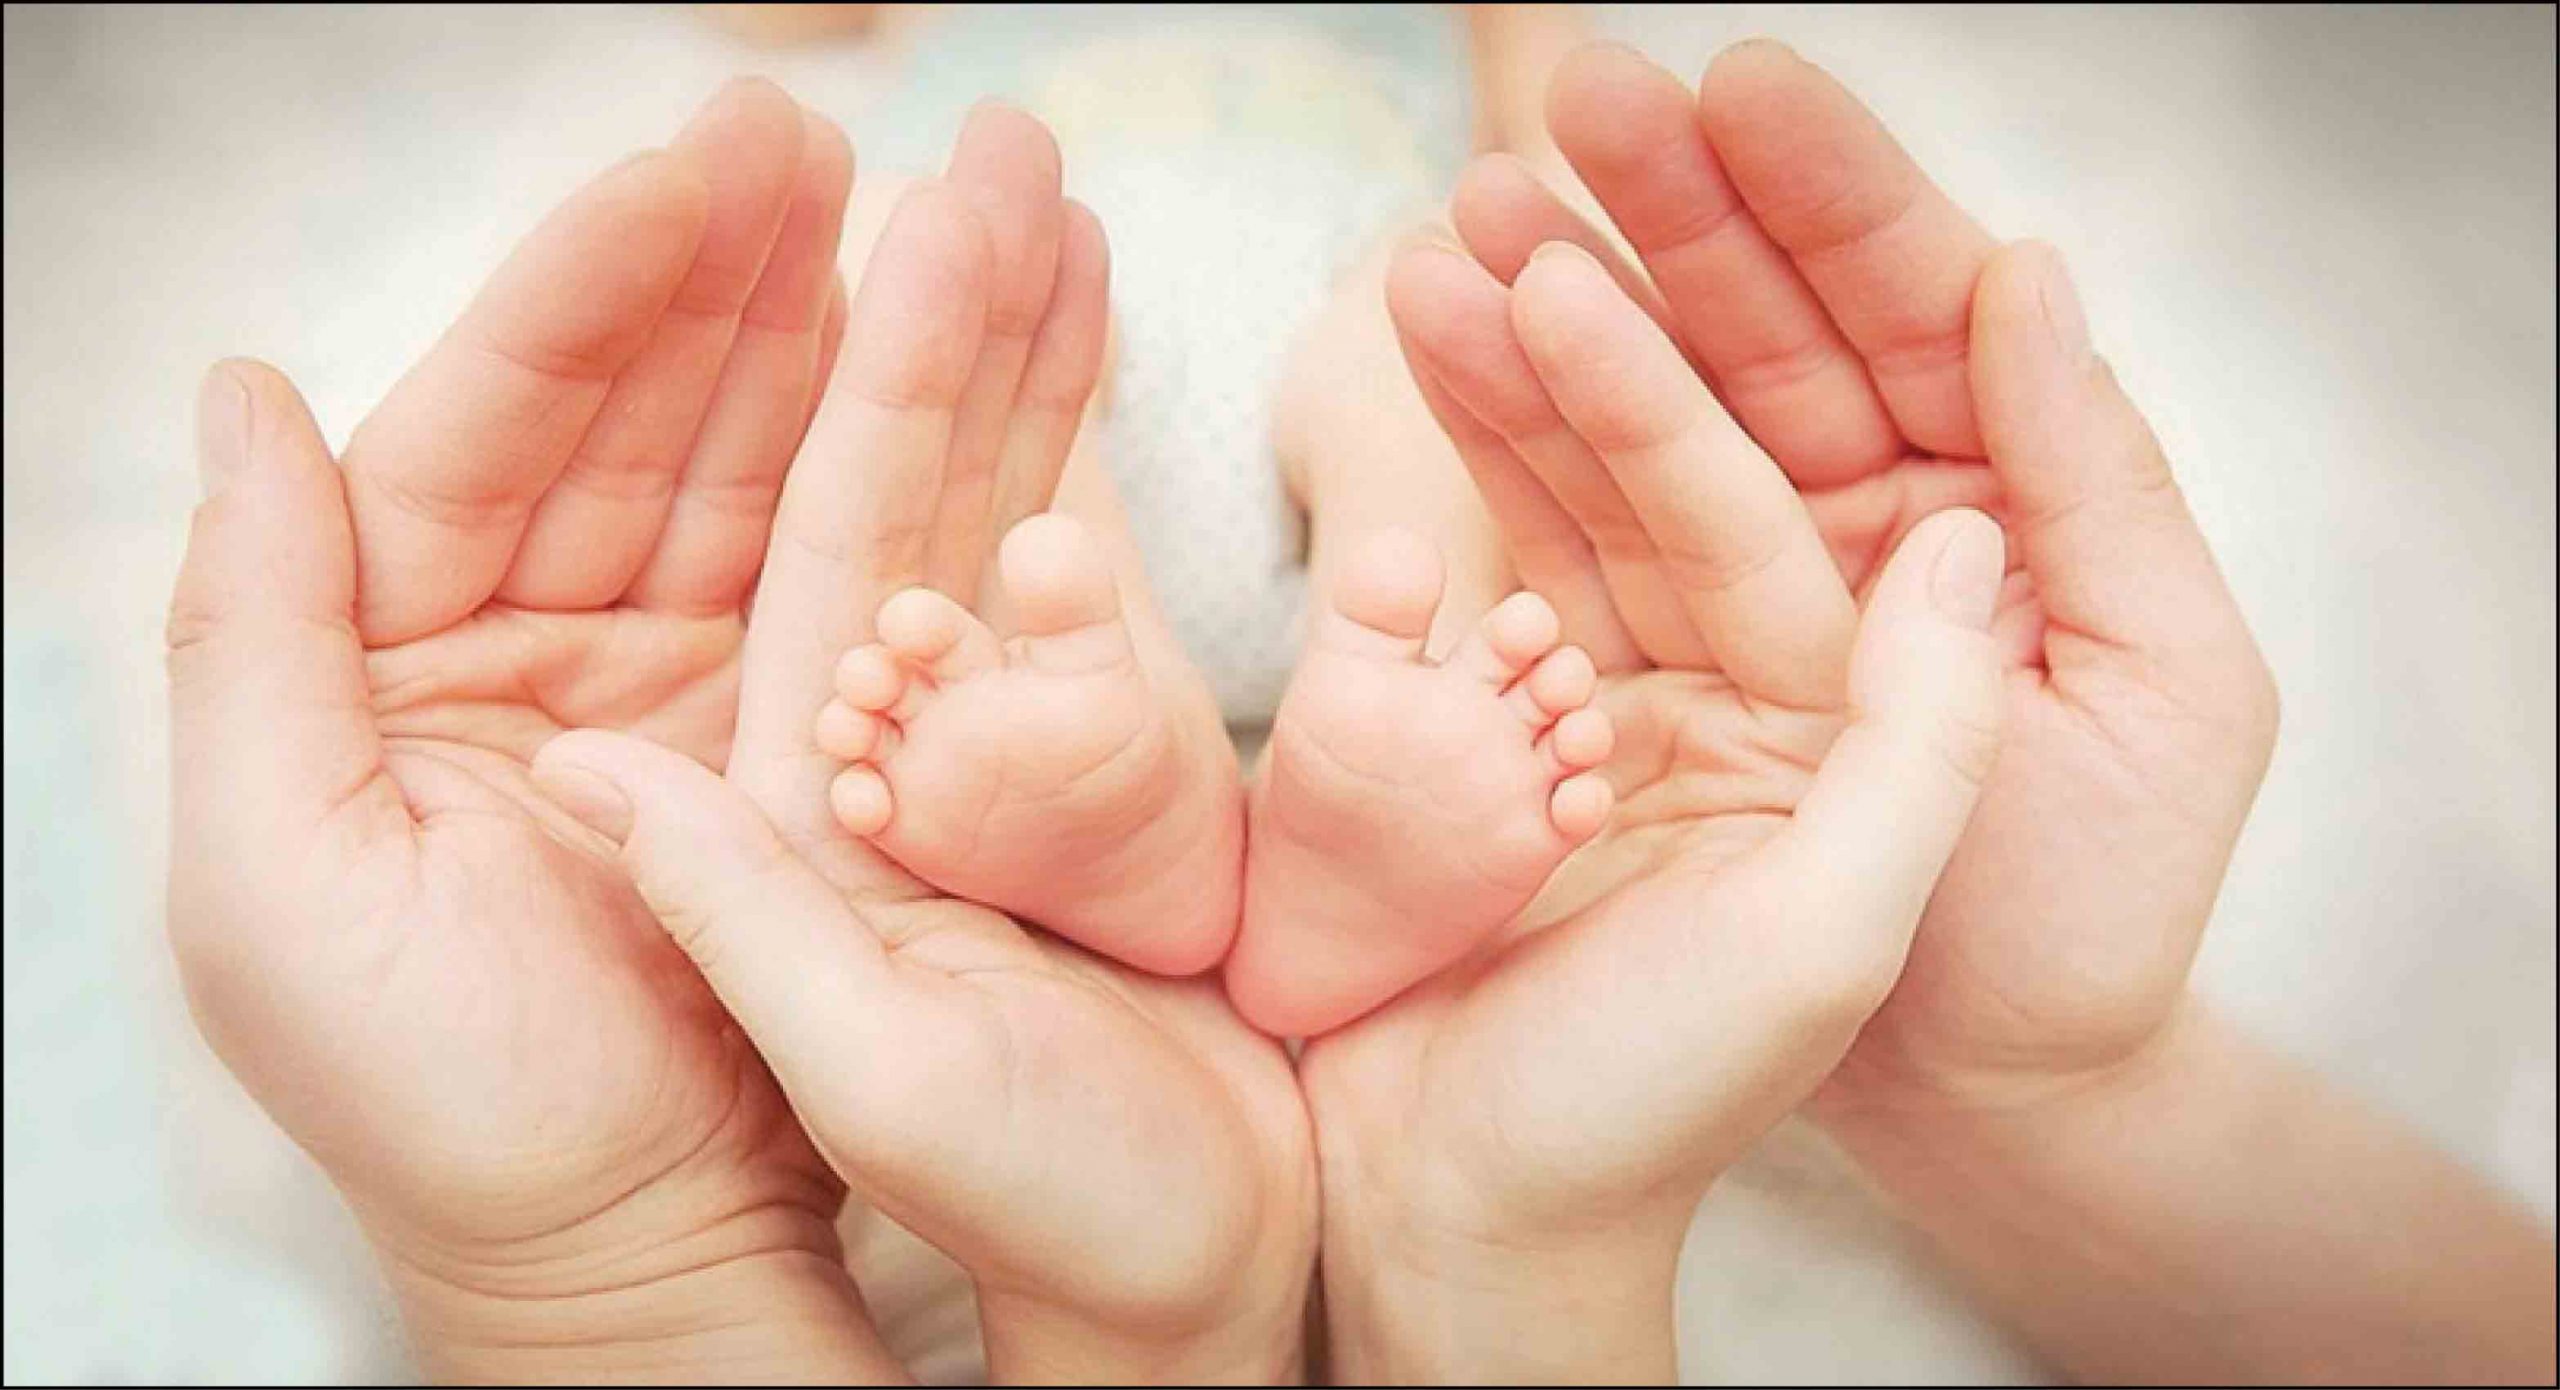 نازایی - دست پدر و مادر و پای نوزاد